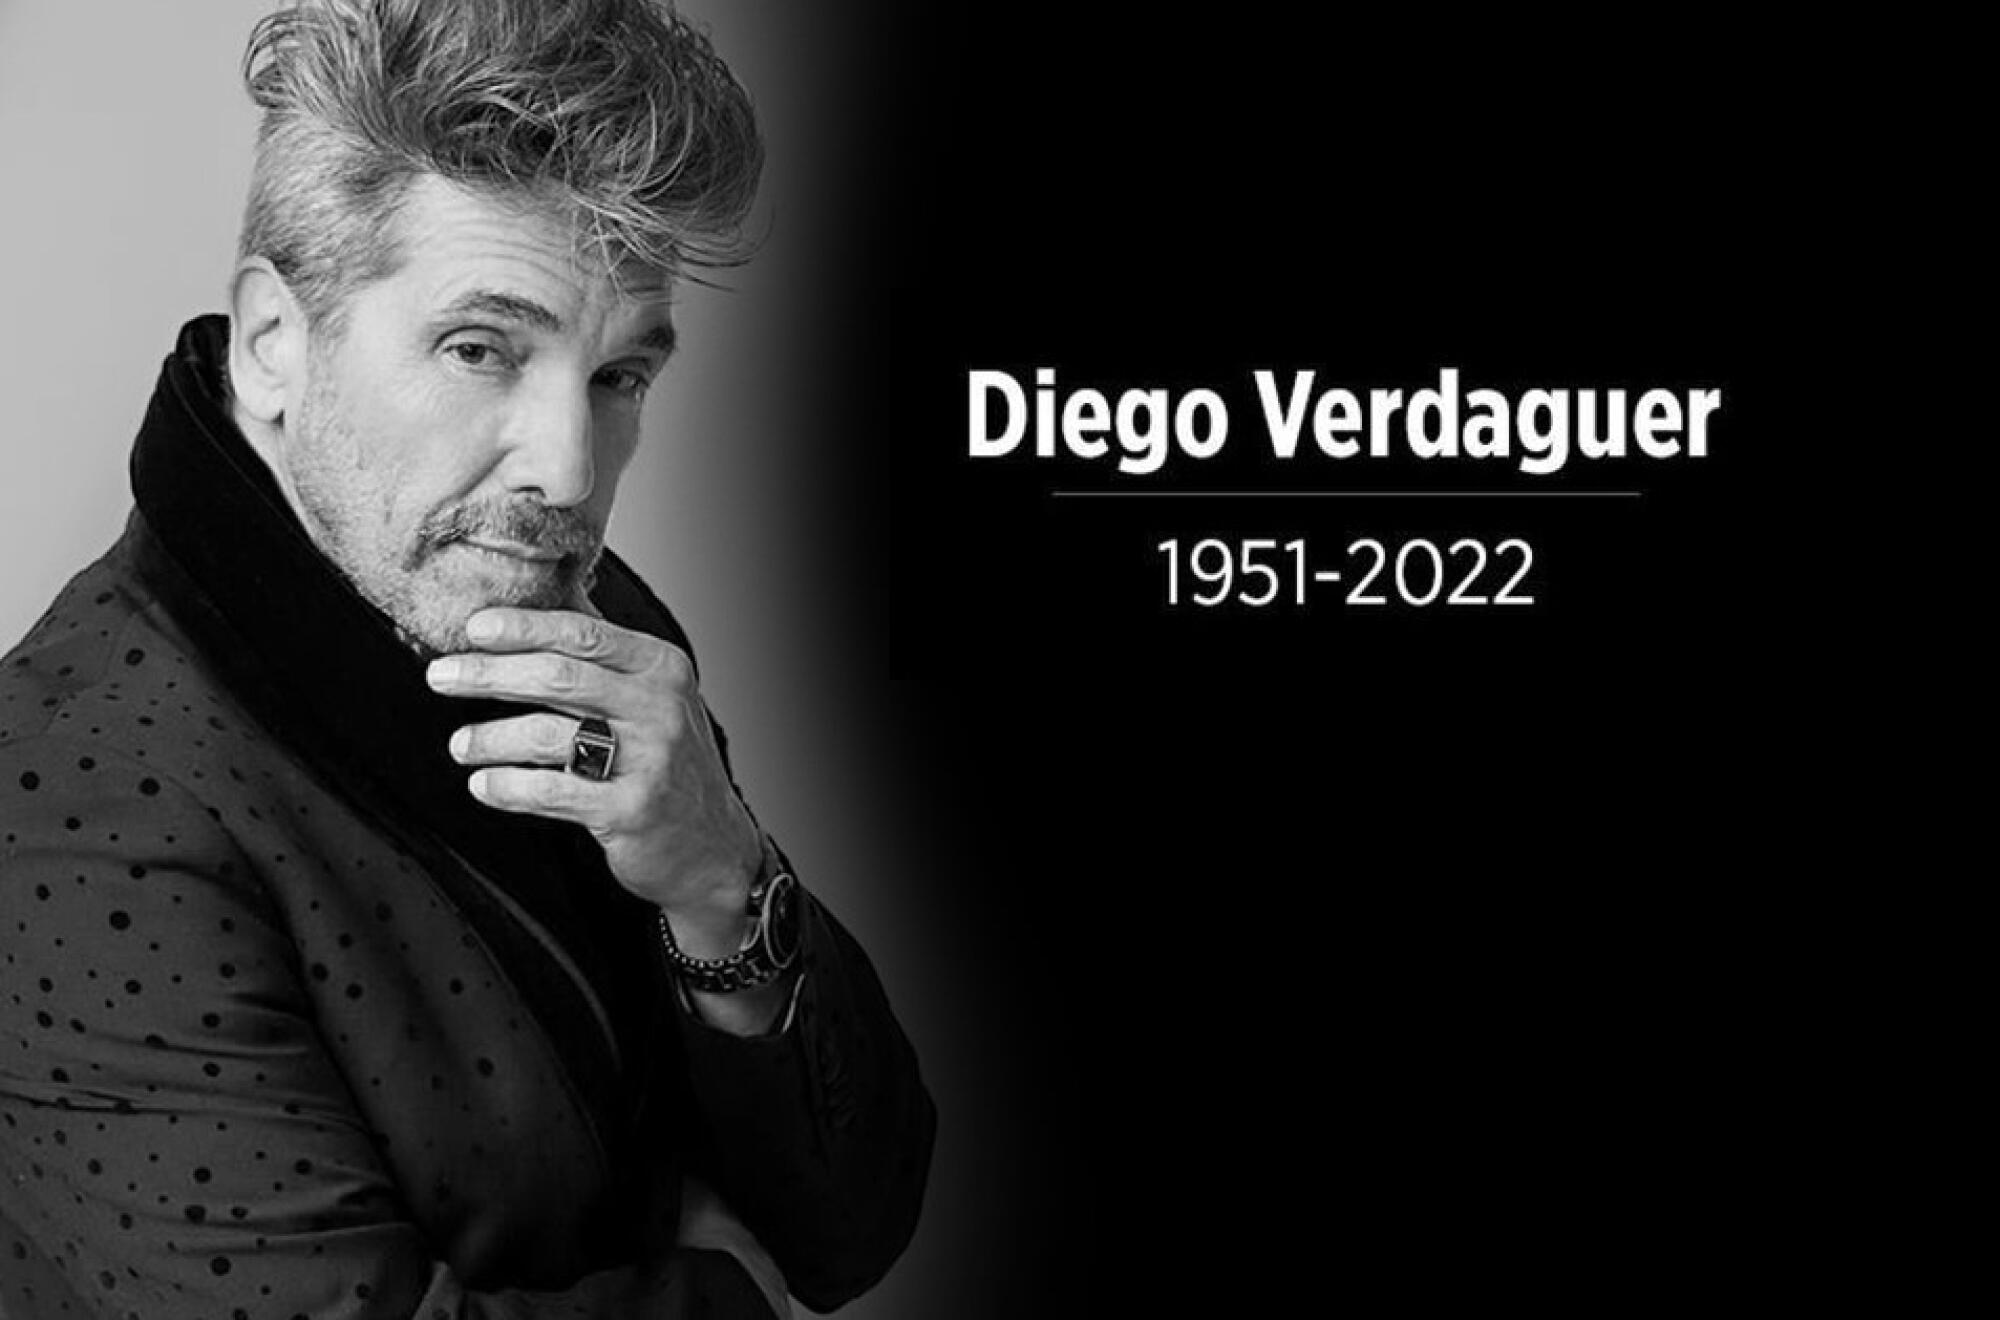 Diego Verdaguer se iba a presentar en febrero en Los Angeles y San Diego, pero lo sorprendió